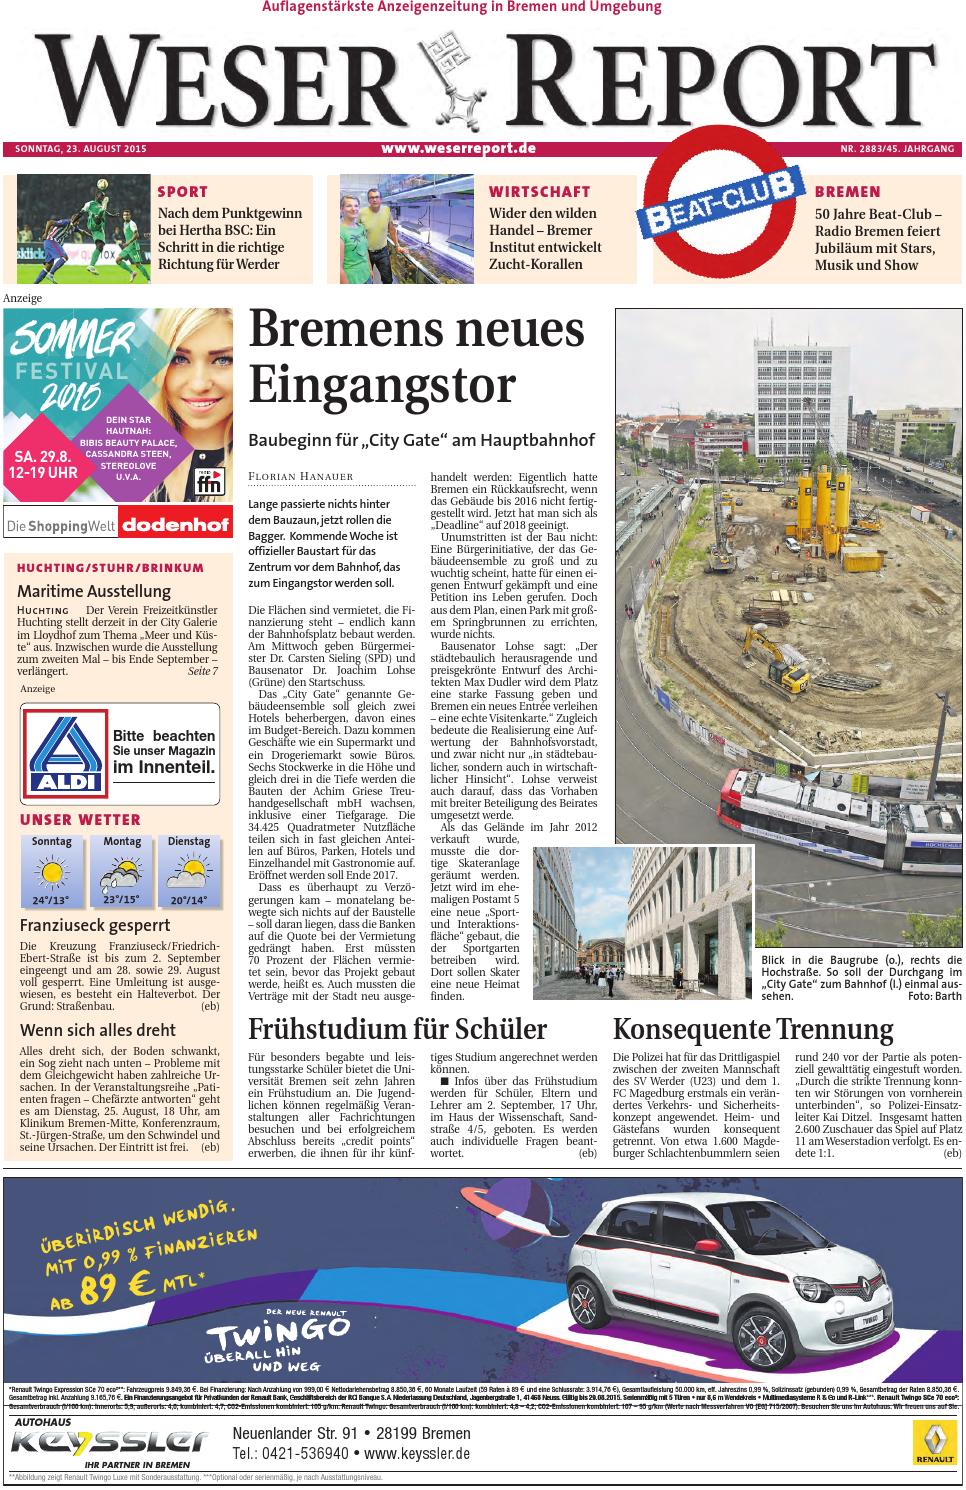 Rankgitter Aldi Inspirierend Weser Report Huchting Stuhr Brinkum Vom 23 08 2015 by Kps